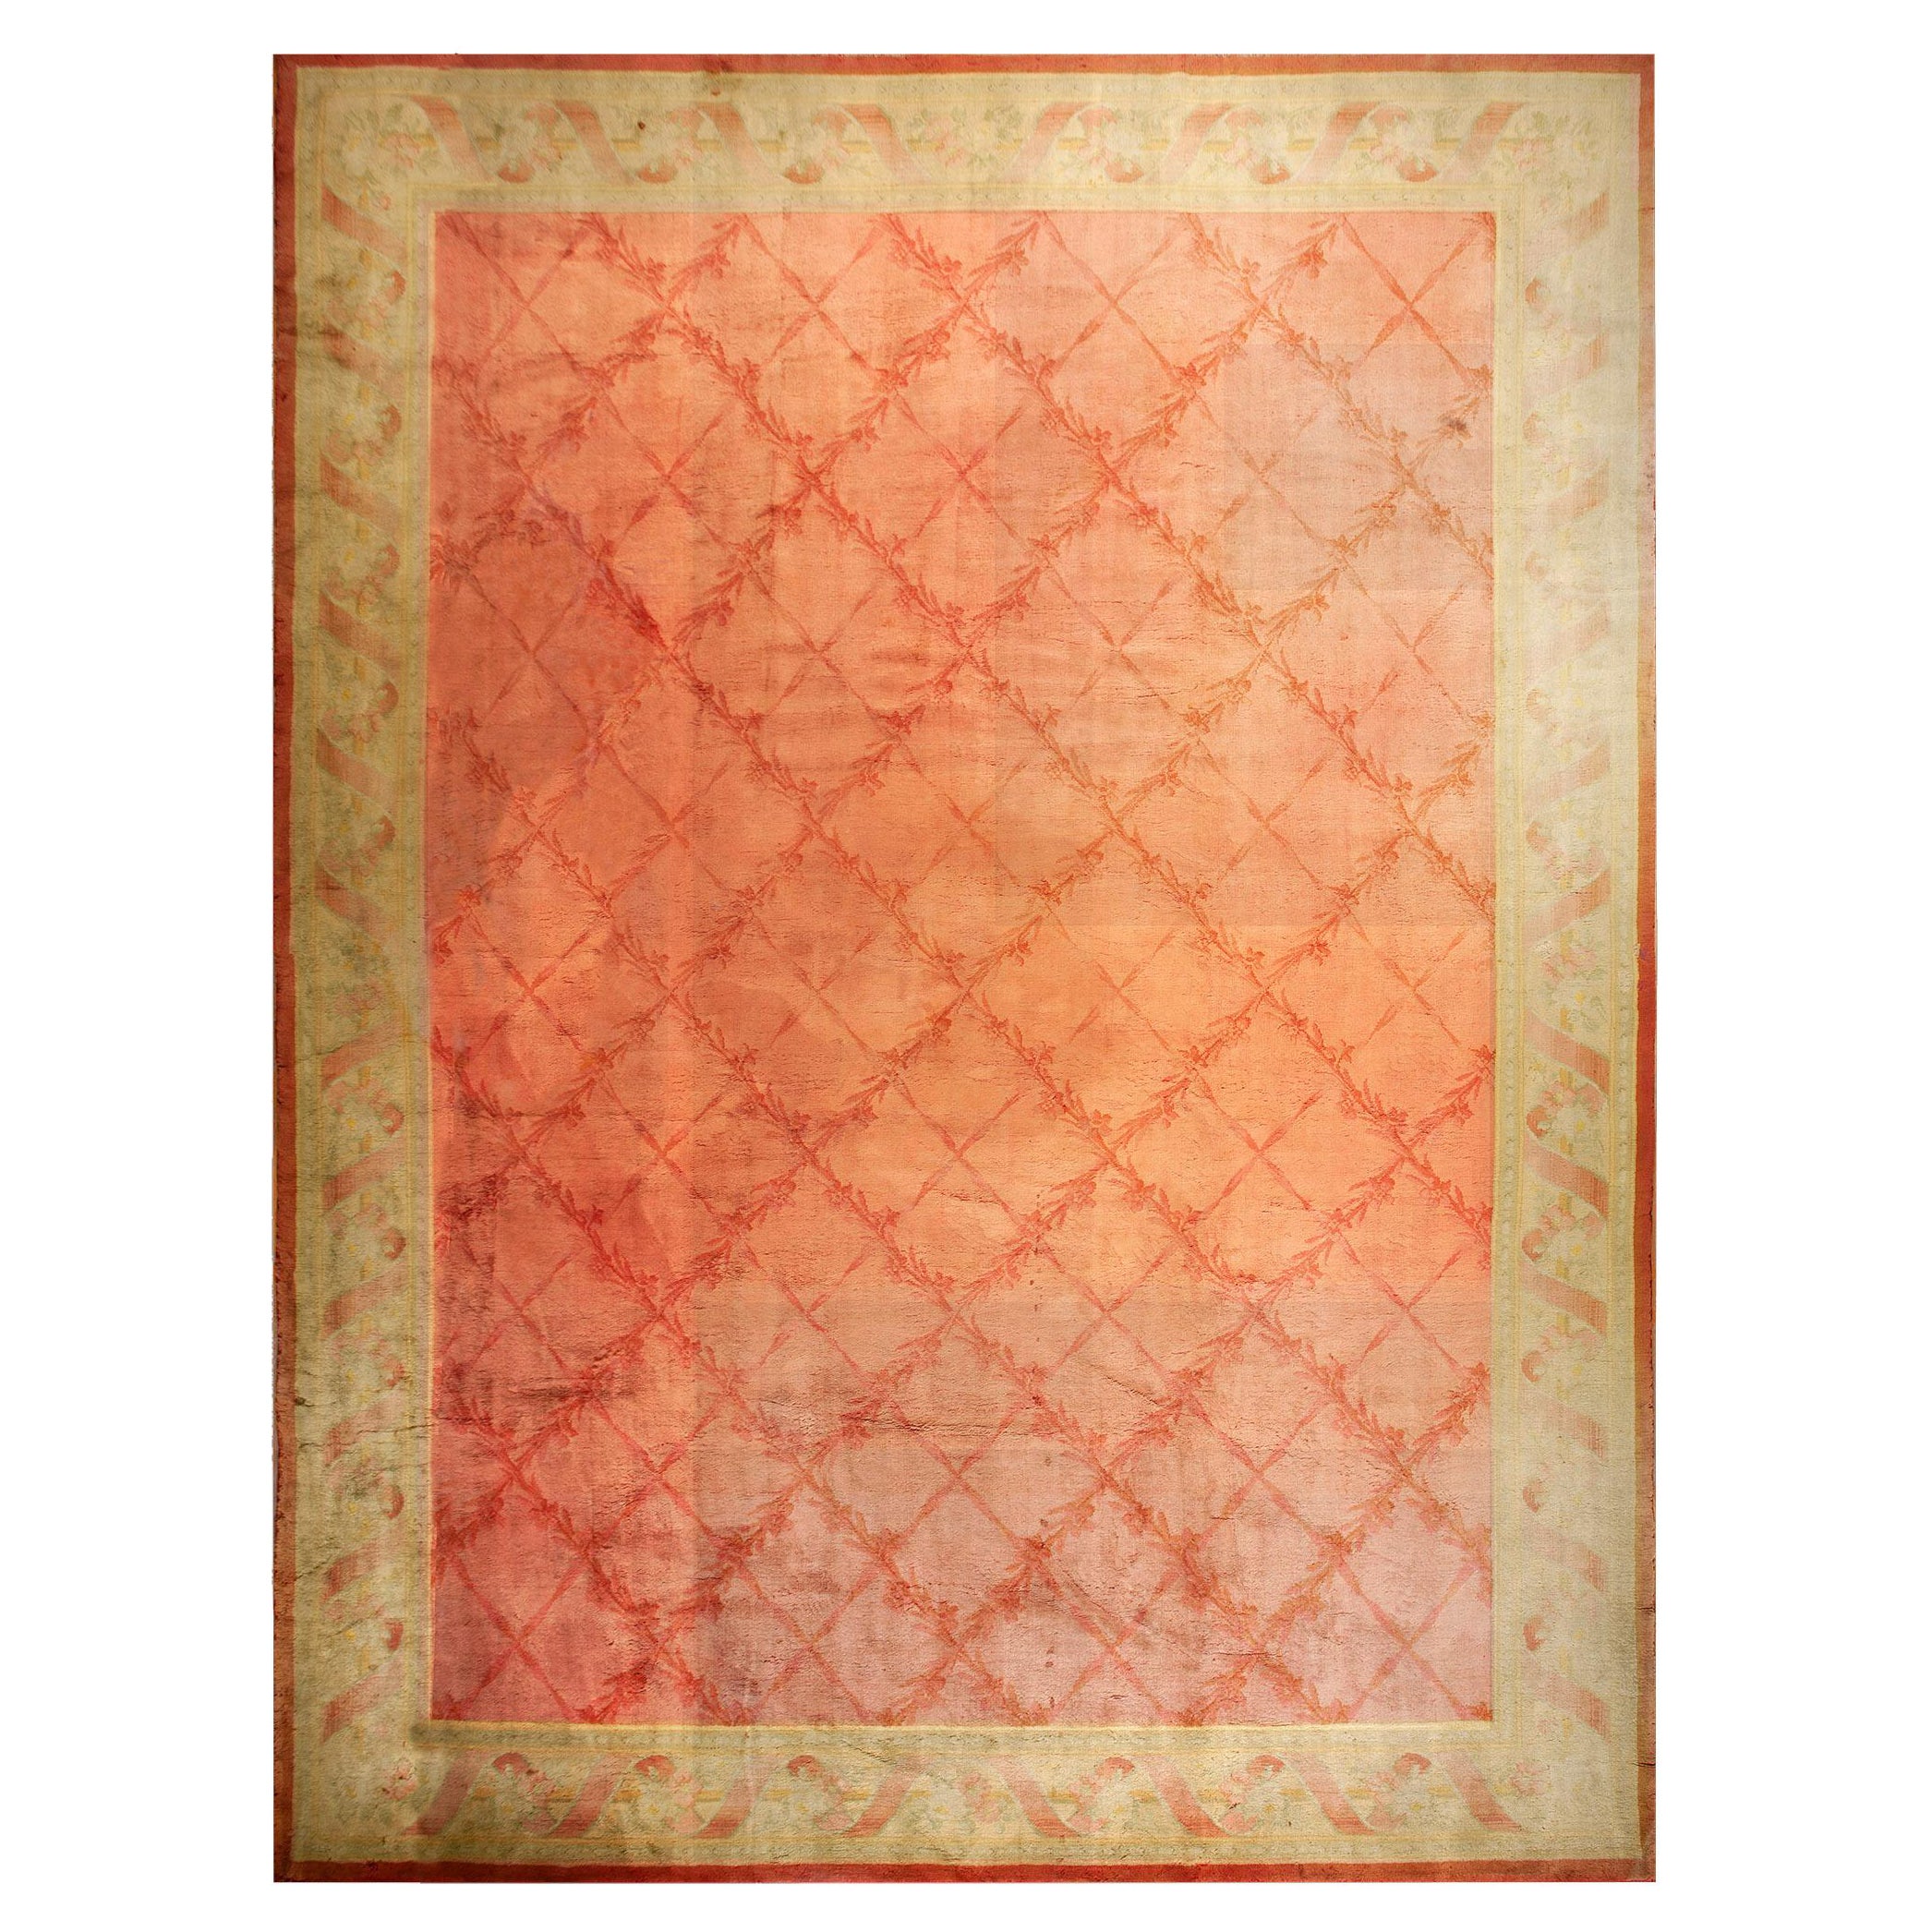  Französischer Savonnerie-Teppich des frühen 20. Jahrhunderts ( 15'6" x 21' - 472 x 640 )